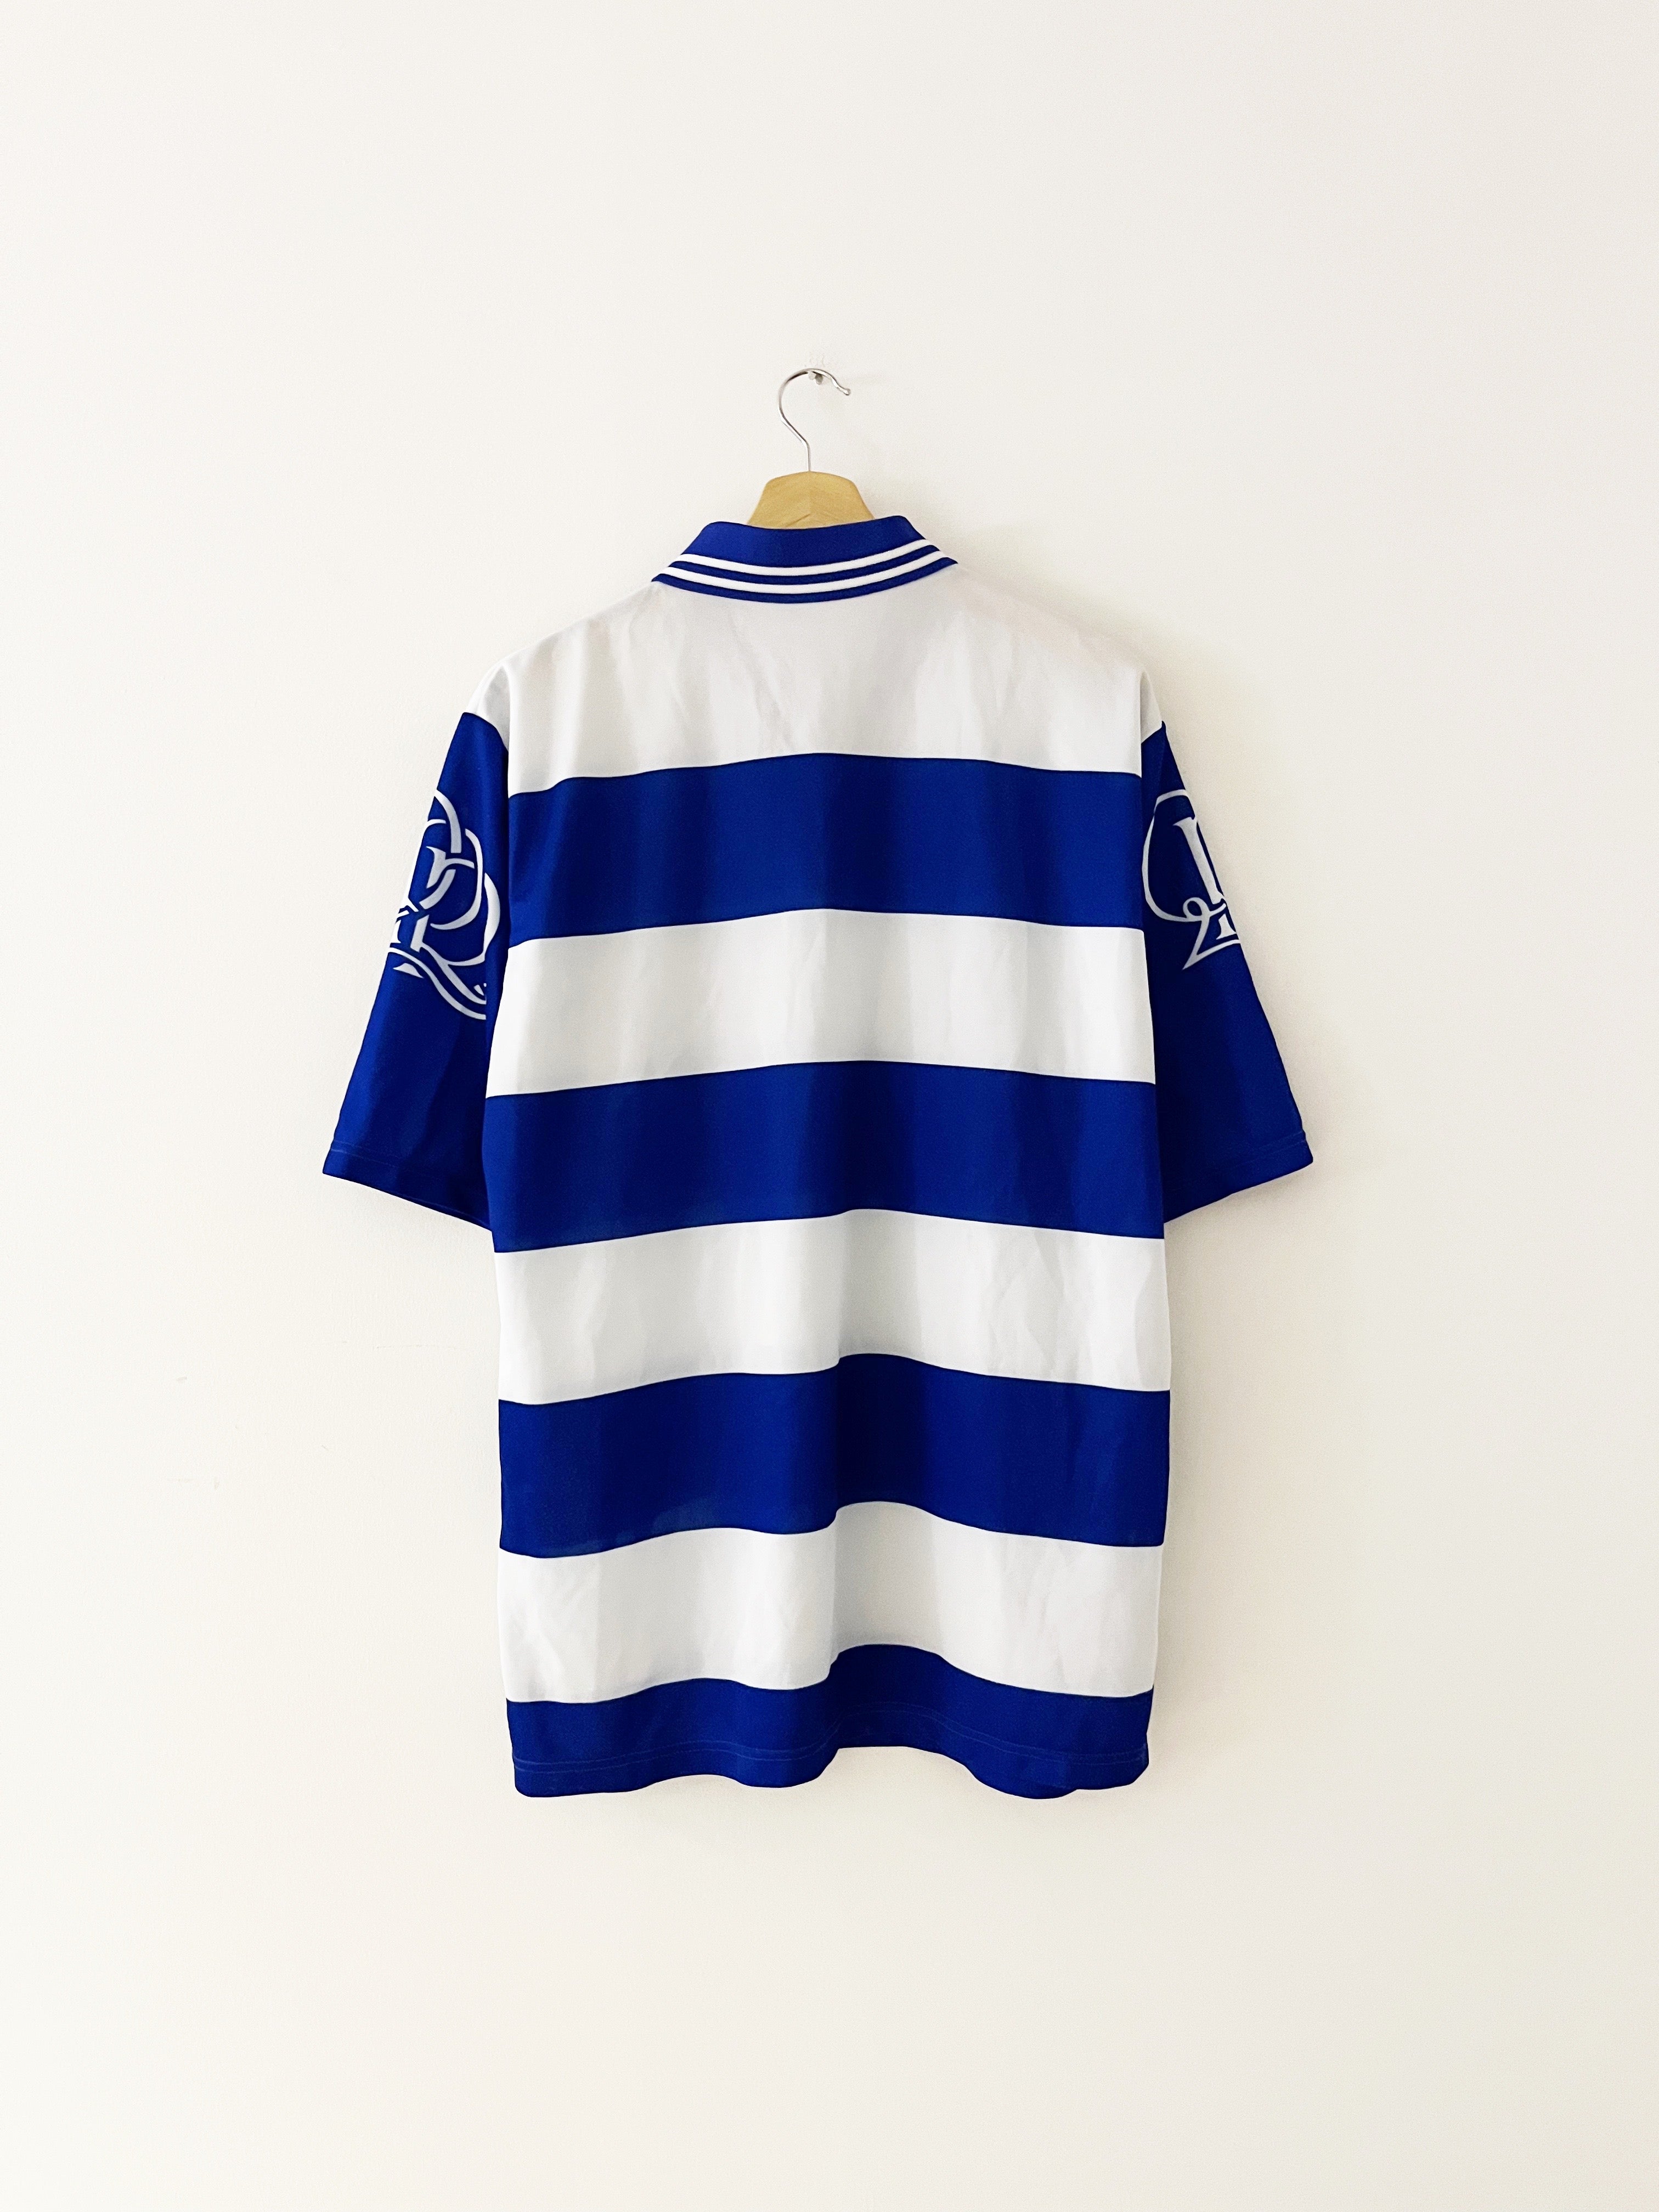 1997/99 QPR Home Shirt (XL) 7.5/10